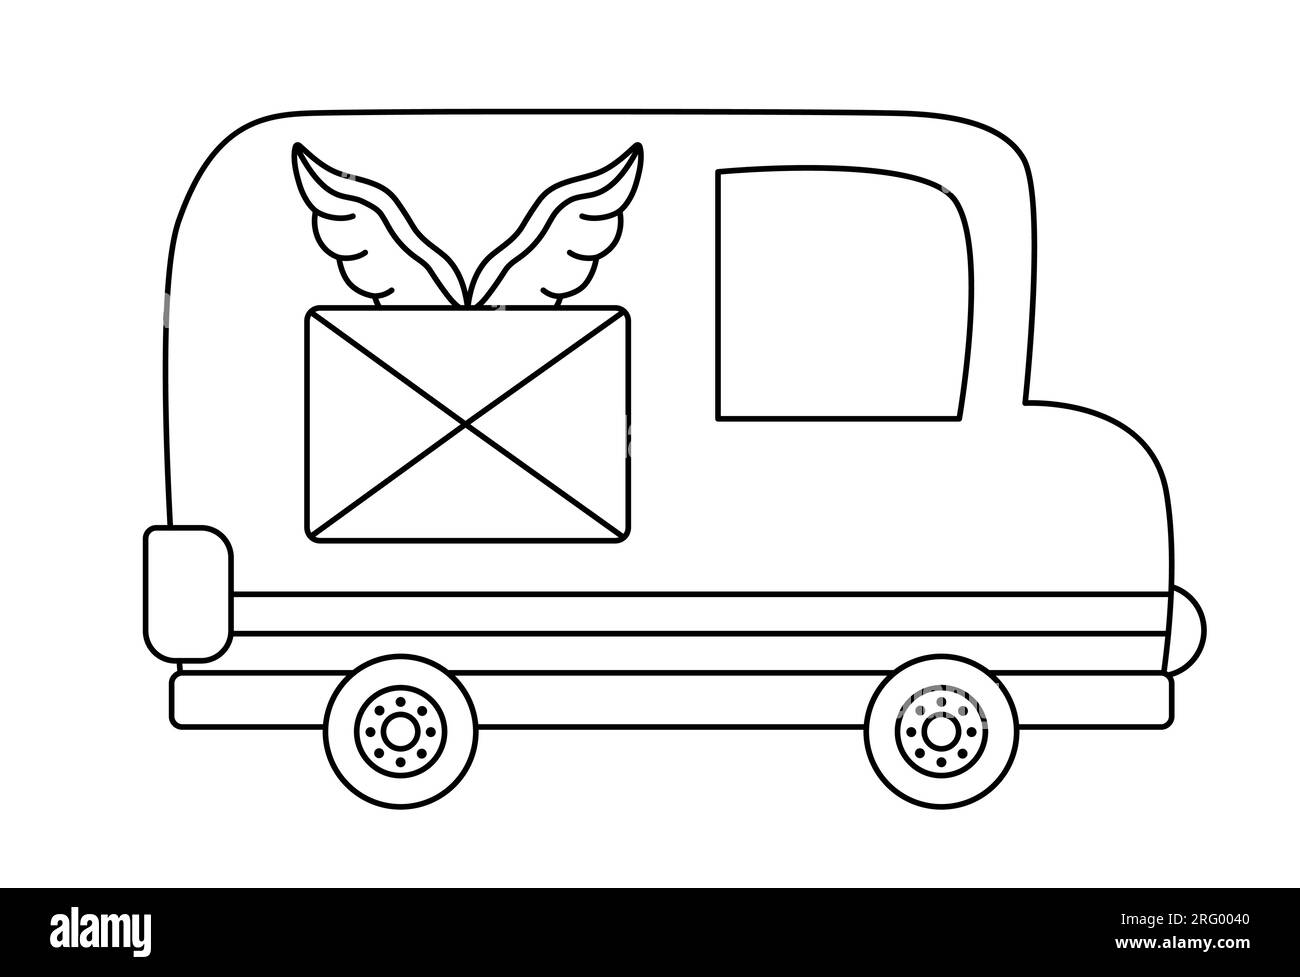 Camion postal noir et blanc Vector. Transport en ligne drôle pour les enfants. Véhicule mignon pour la livraison de courrier clip art Icône de transport spéciale ou couleur p Illustration de Vecteur